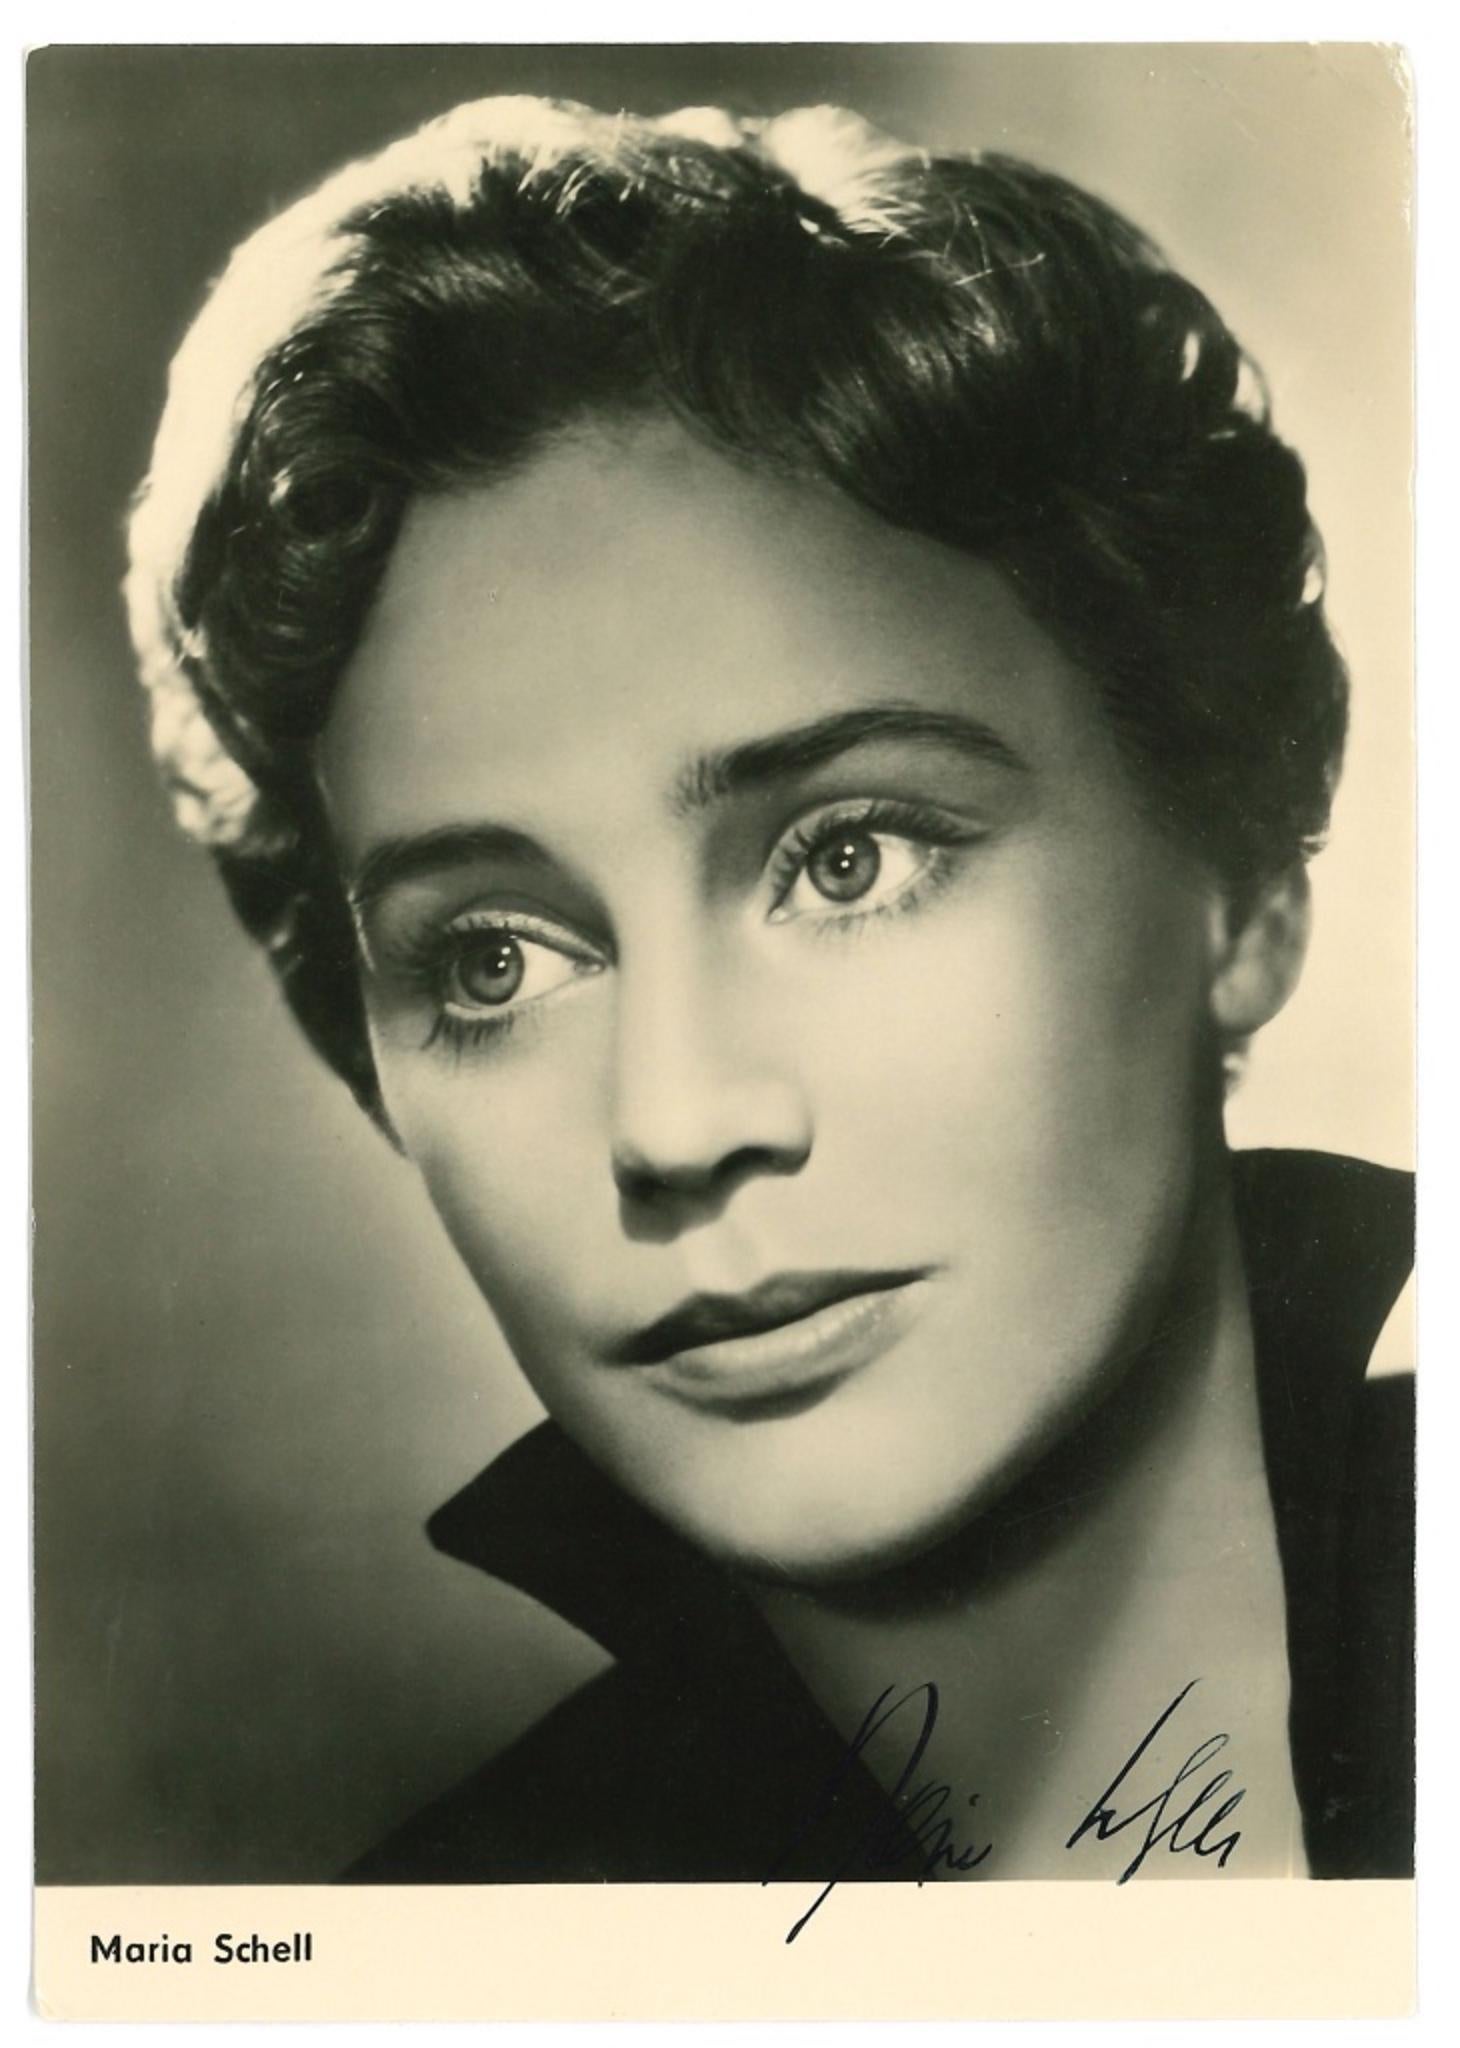 Unknown Portrait Photograph - Autographed Portrait by Maria Schell - Vintage b/w Postcard - 1950s